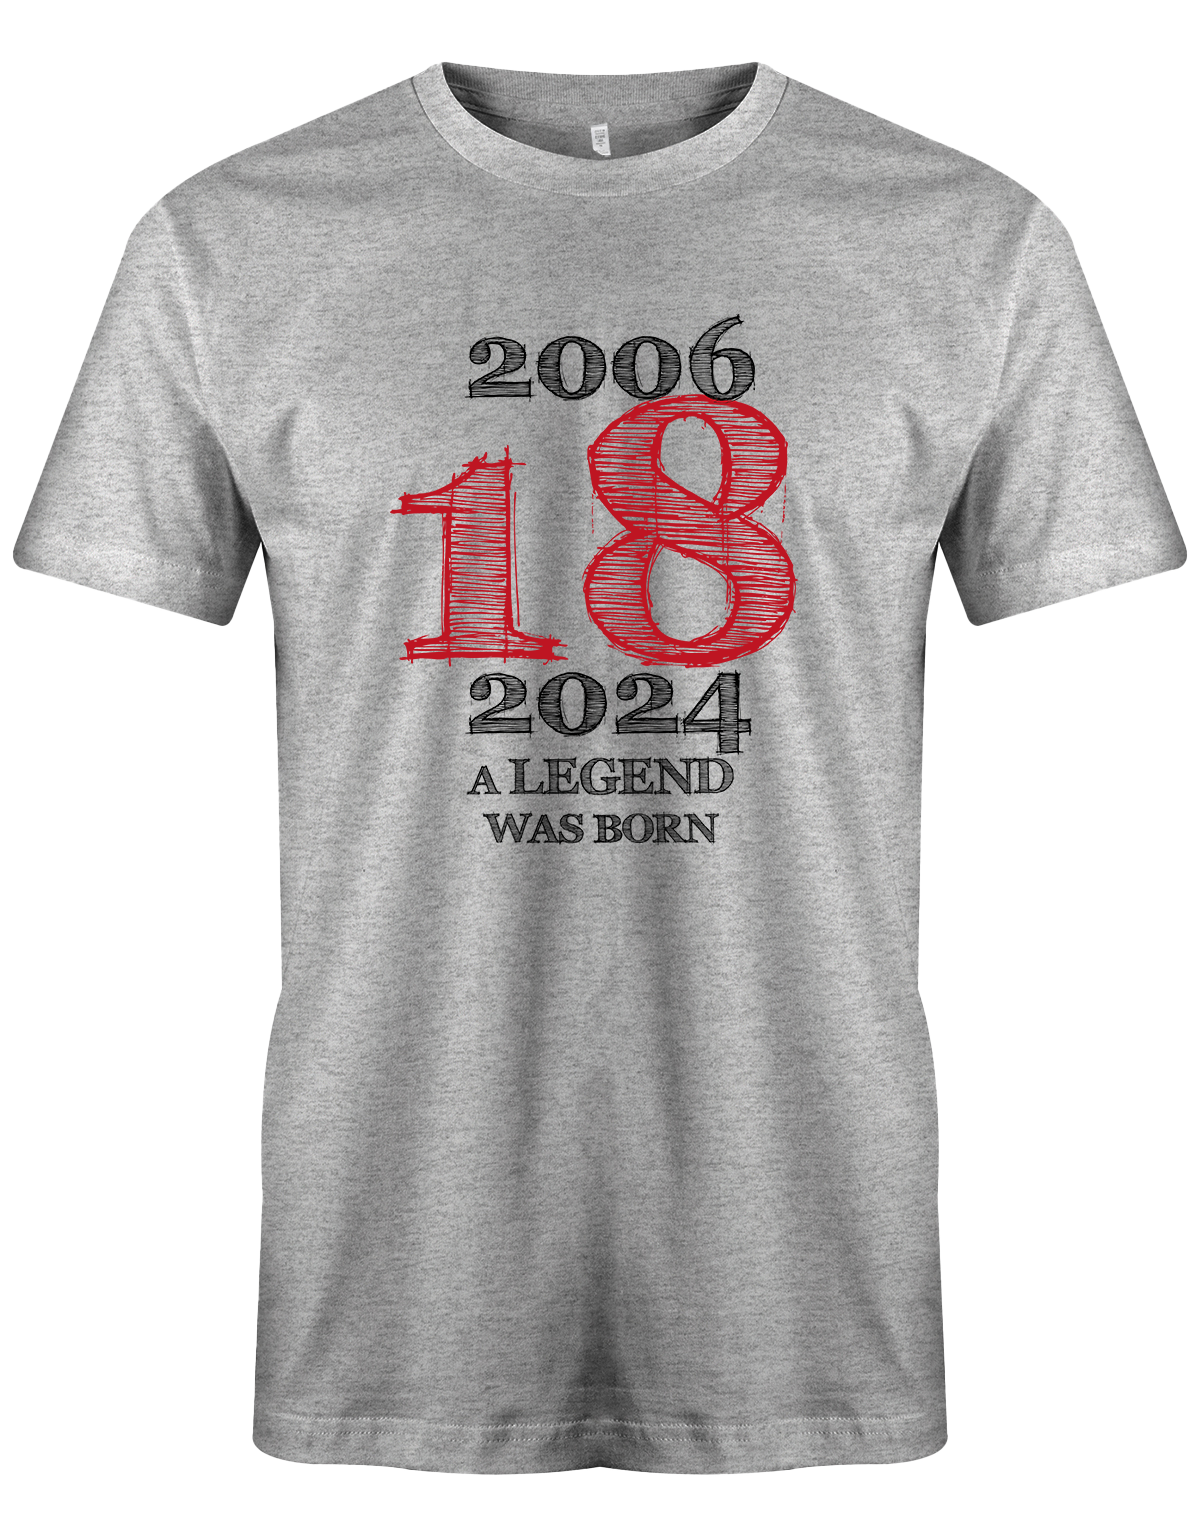 Cooles T-Shirt zum 18. Geburtstag für Jungen. Bedruckt mit: 2006 - 2024 18 A Legend was born Line Design Das T Shirt 18 Geburtstag Junge Lustig ist ein tolles Geschenk für alle 18 Jährigen. Man wird nur einmal 18 Jahre. Geschenk zum 18 geburtstag Jungen ✓ 2005 geburtstag Junge ✓ 18 Geburtstag tshirt ✓ shirt geburtstag 18 grau